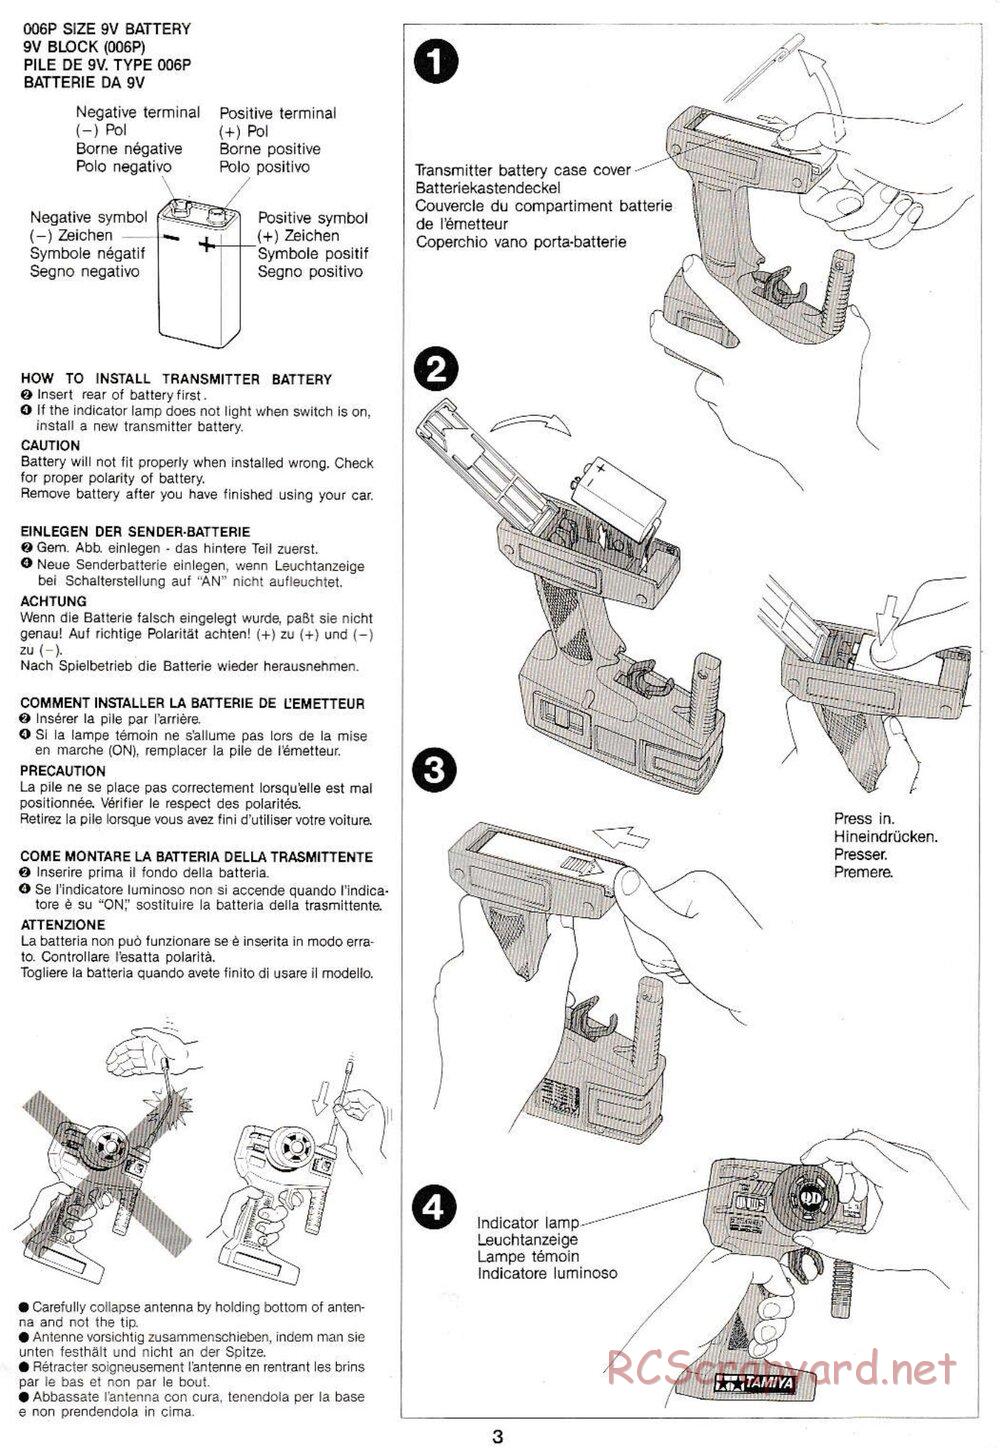 Tamiya - Monster Beetle QD Chassis - Manual - Page 3